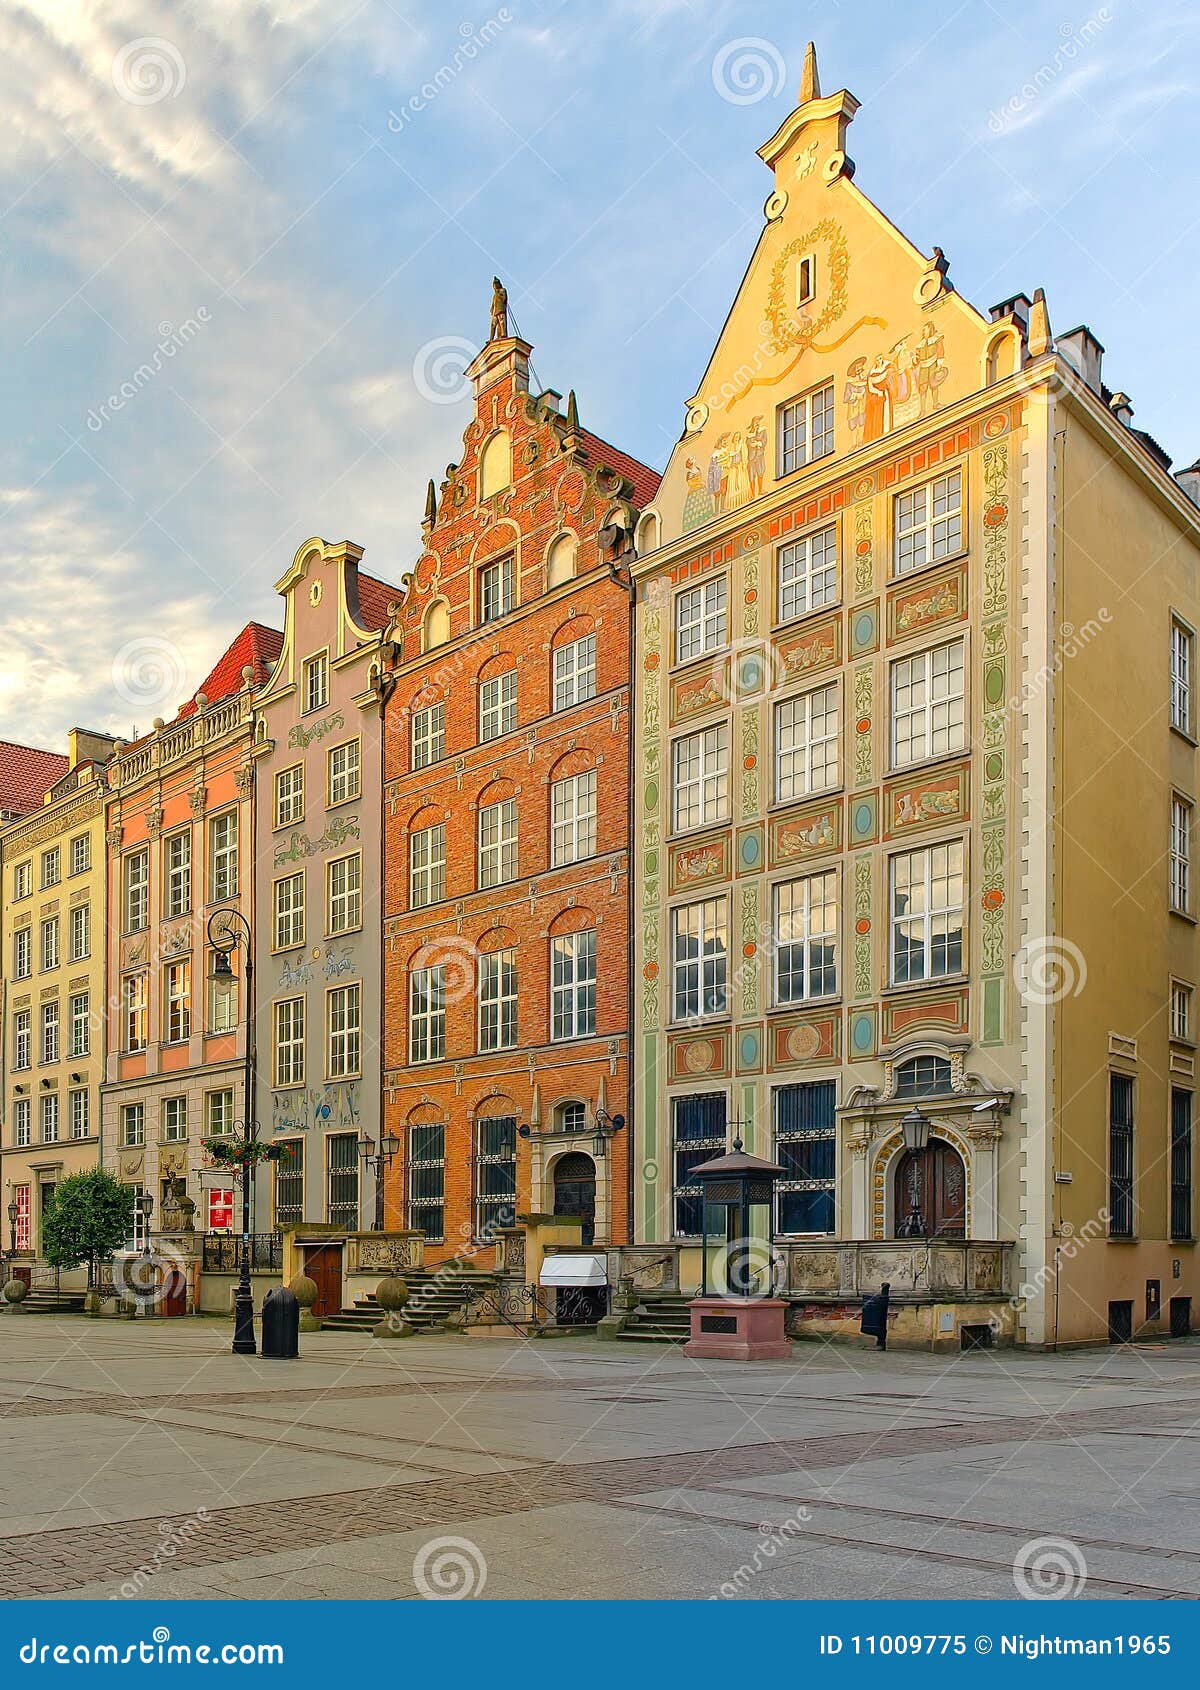 beautiful houses in gdansk